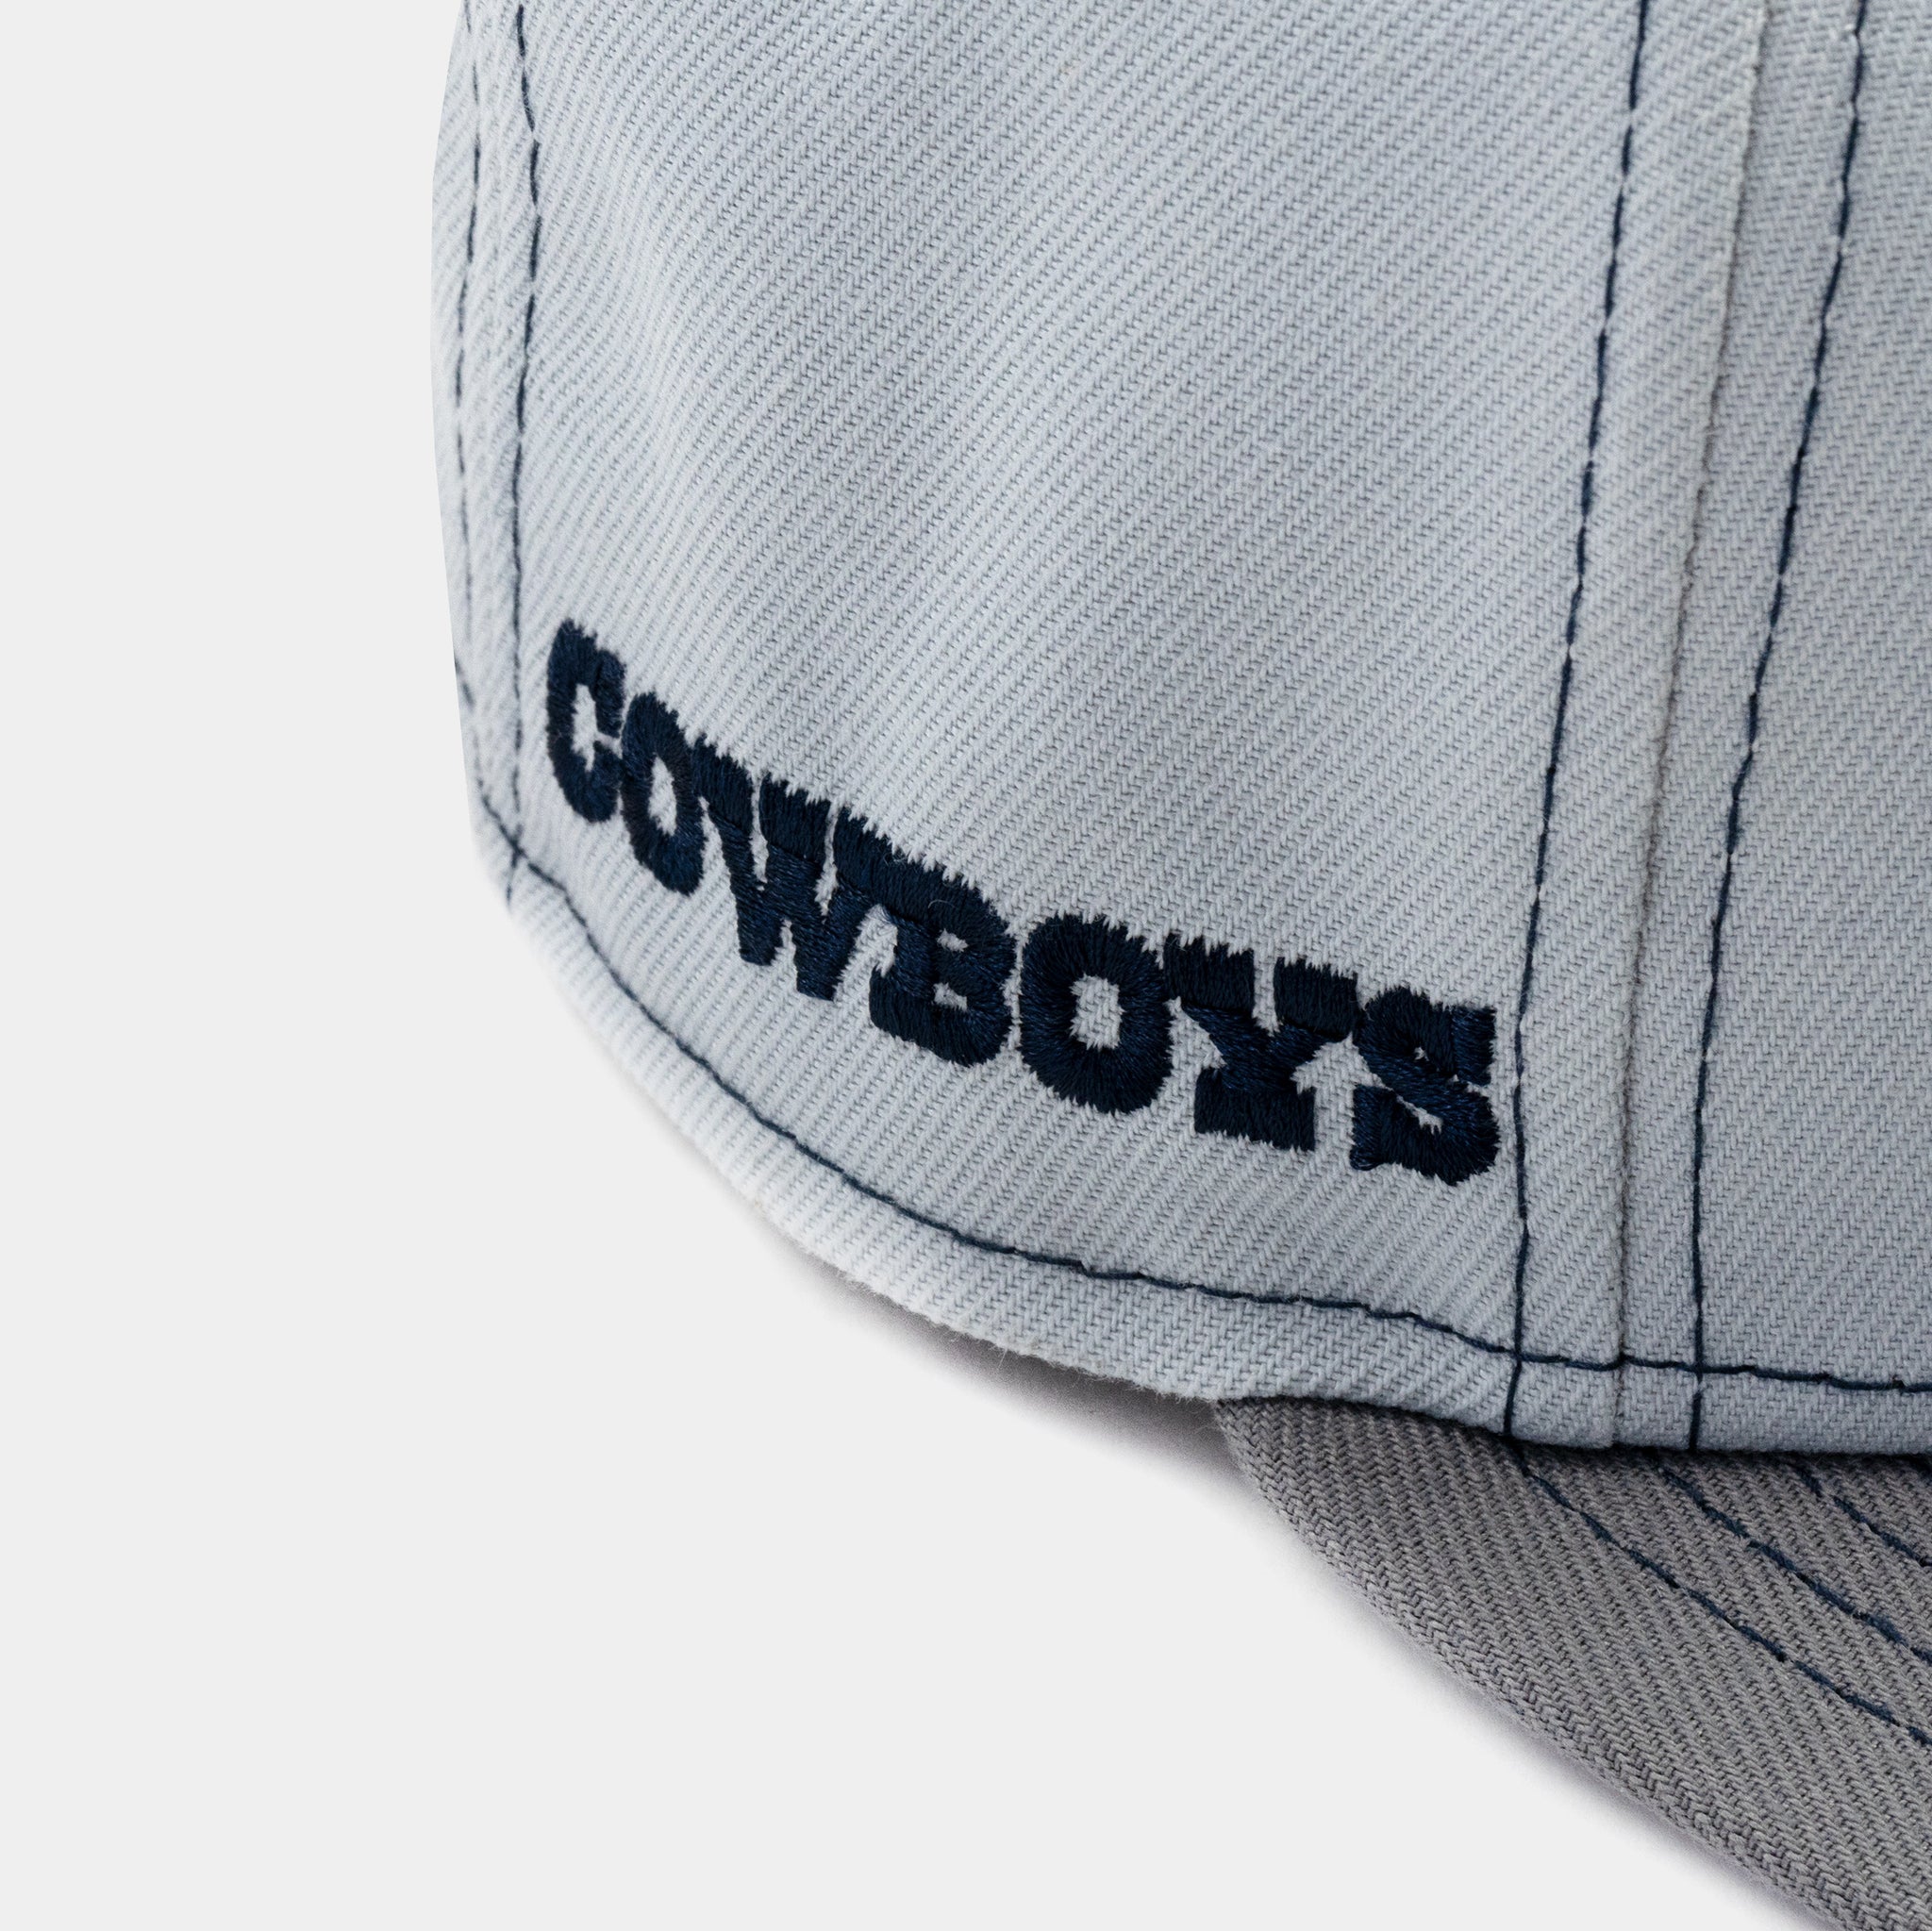 white dallas cowboys hat